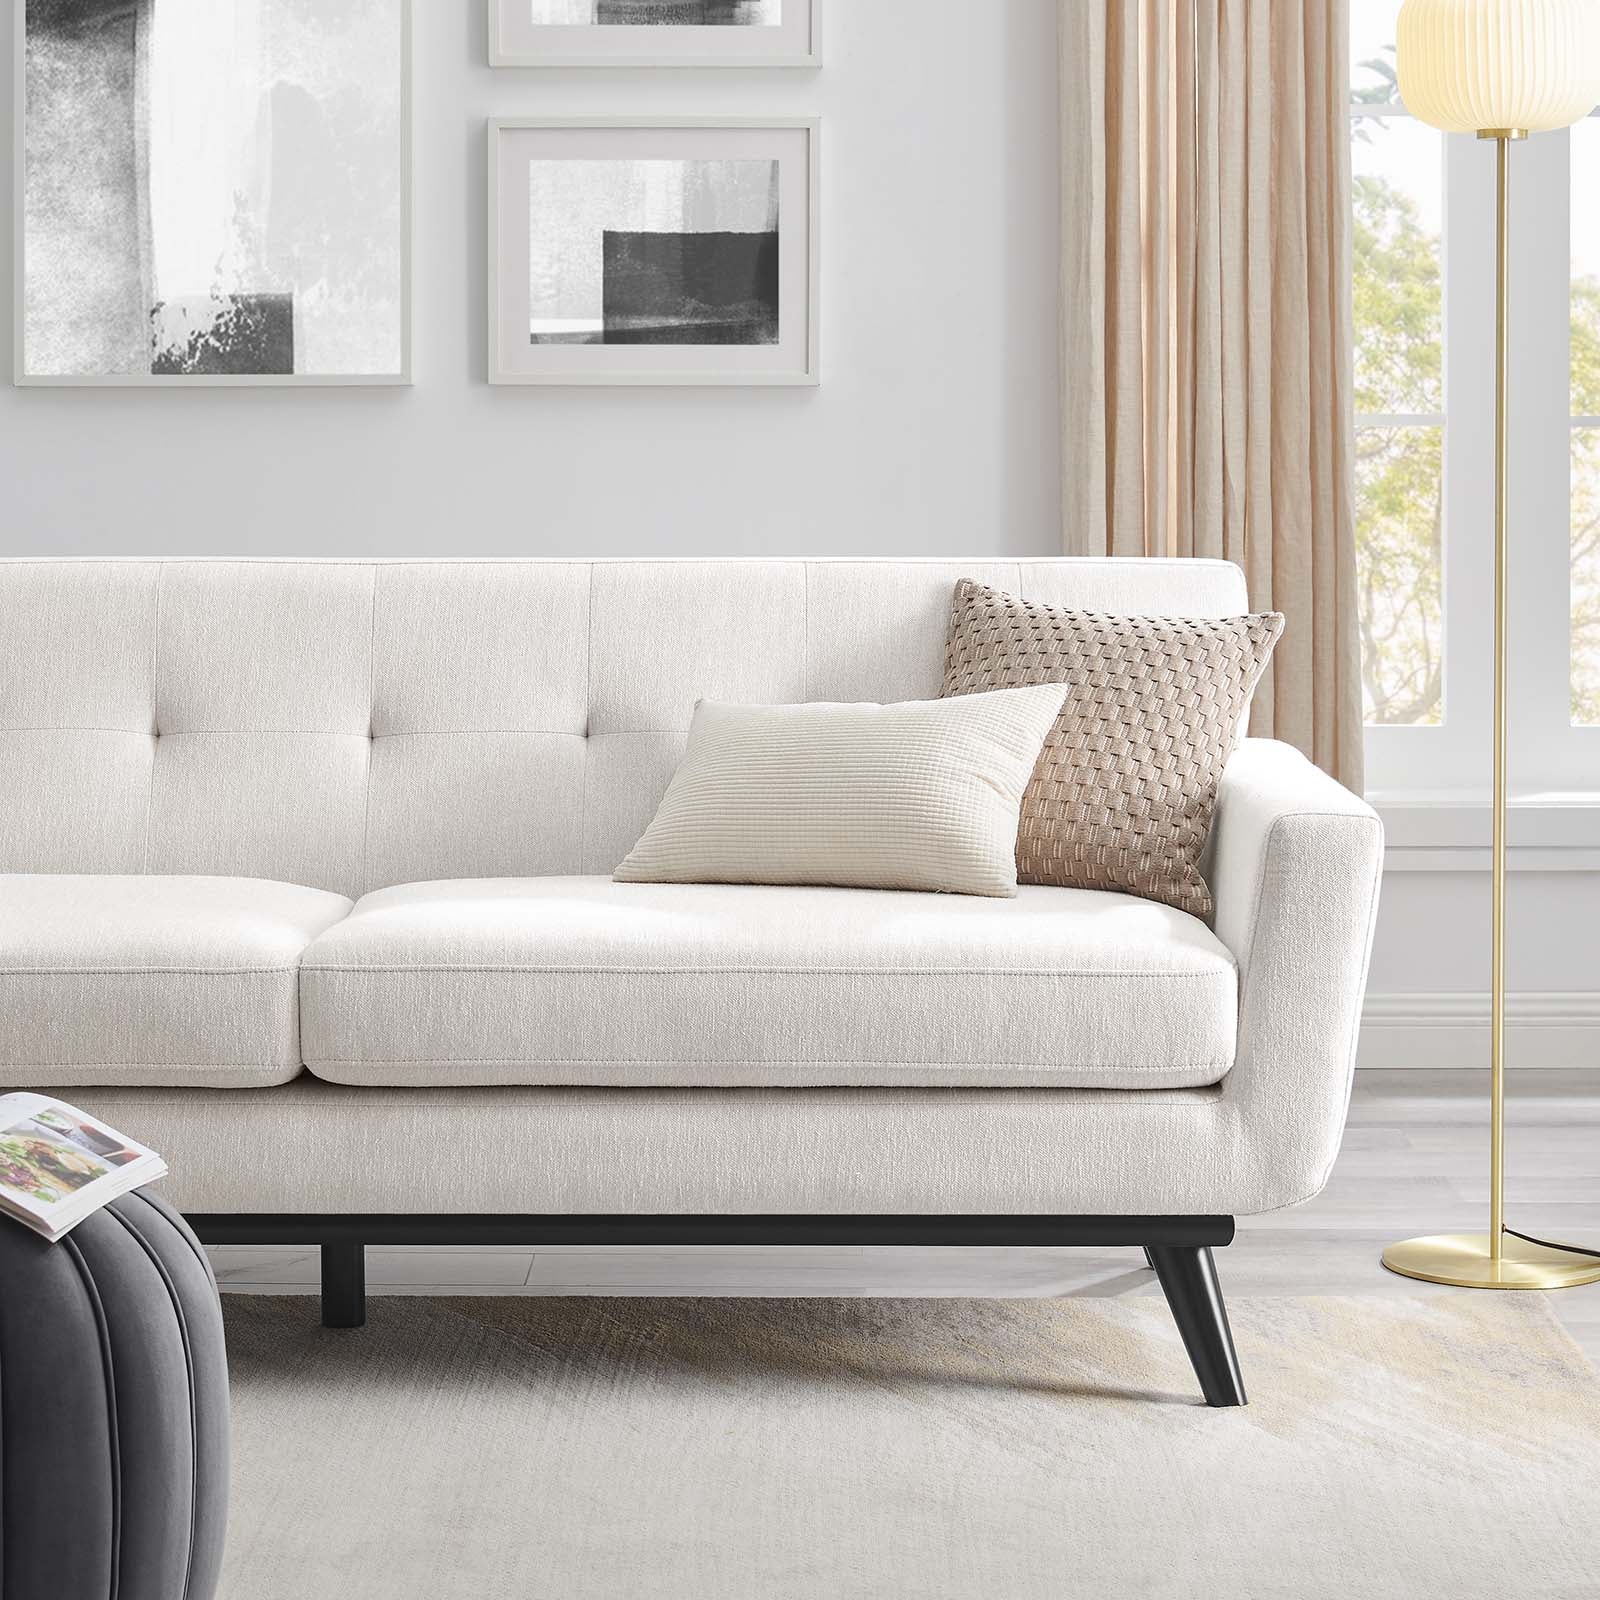 Engage Herringbone Fabric Sofa - East Shore Modern Home Furnishings